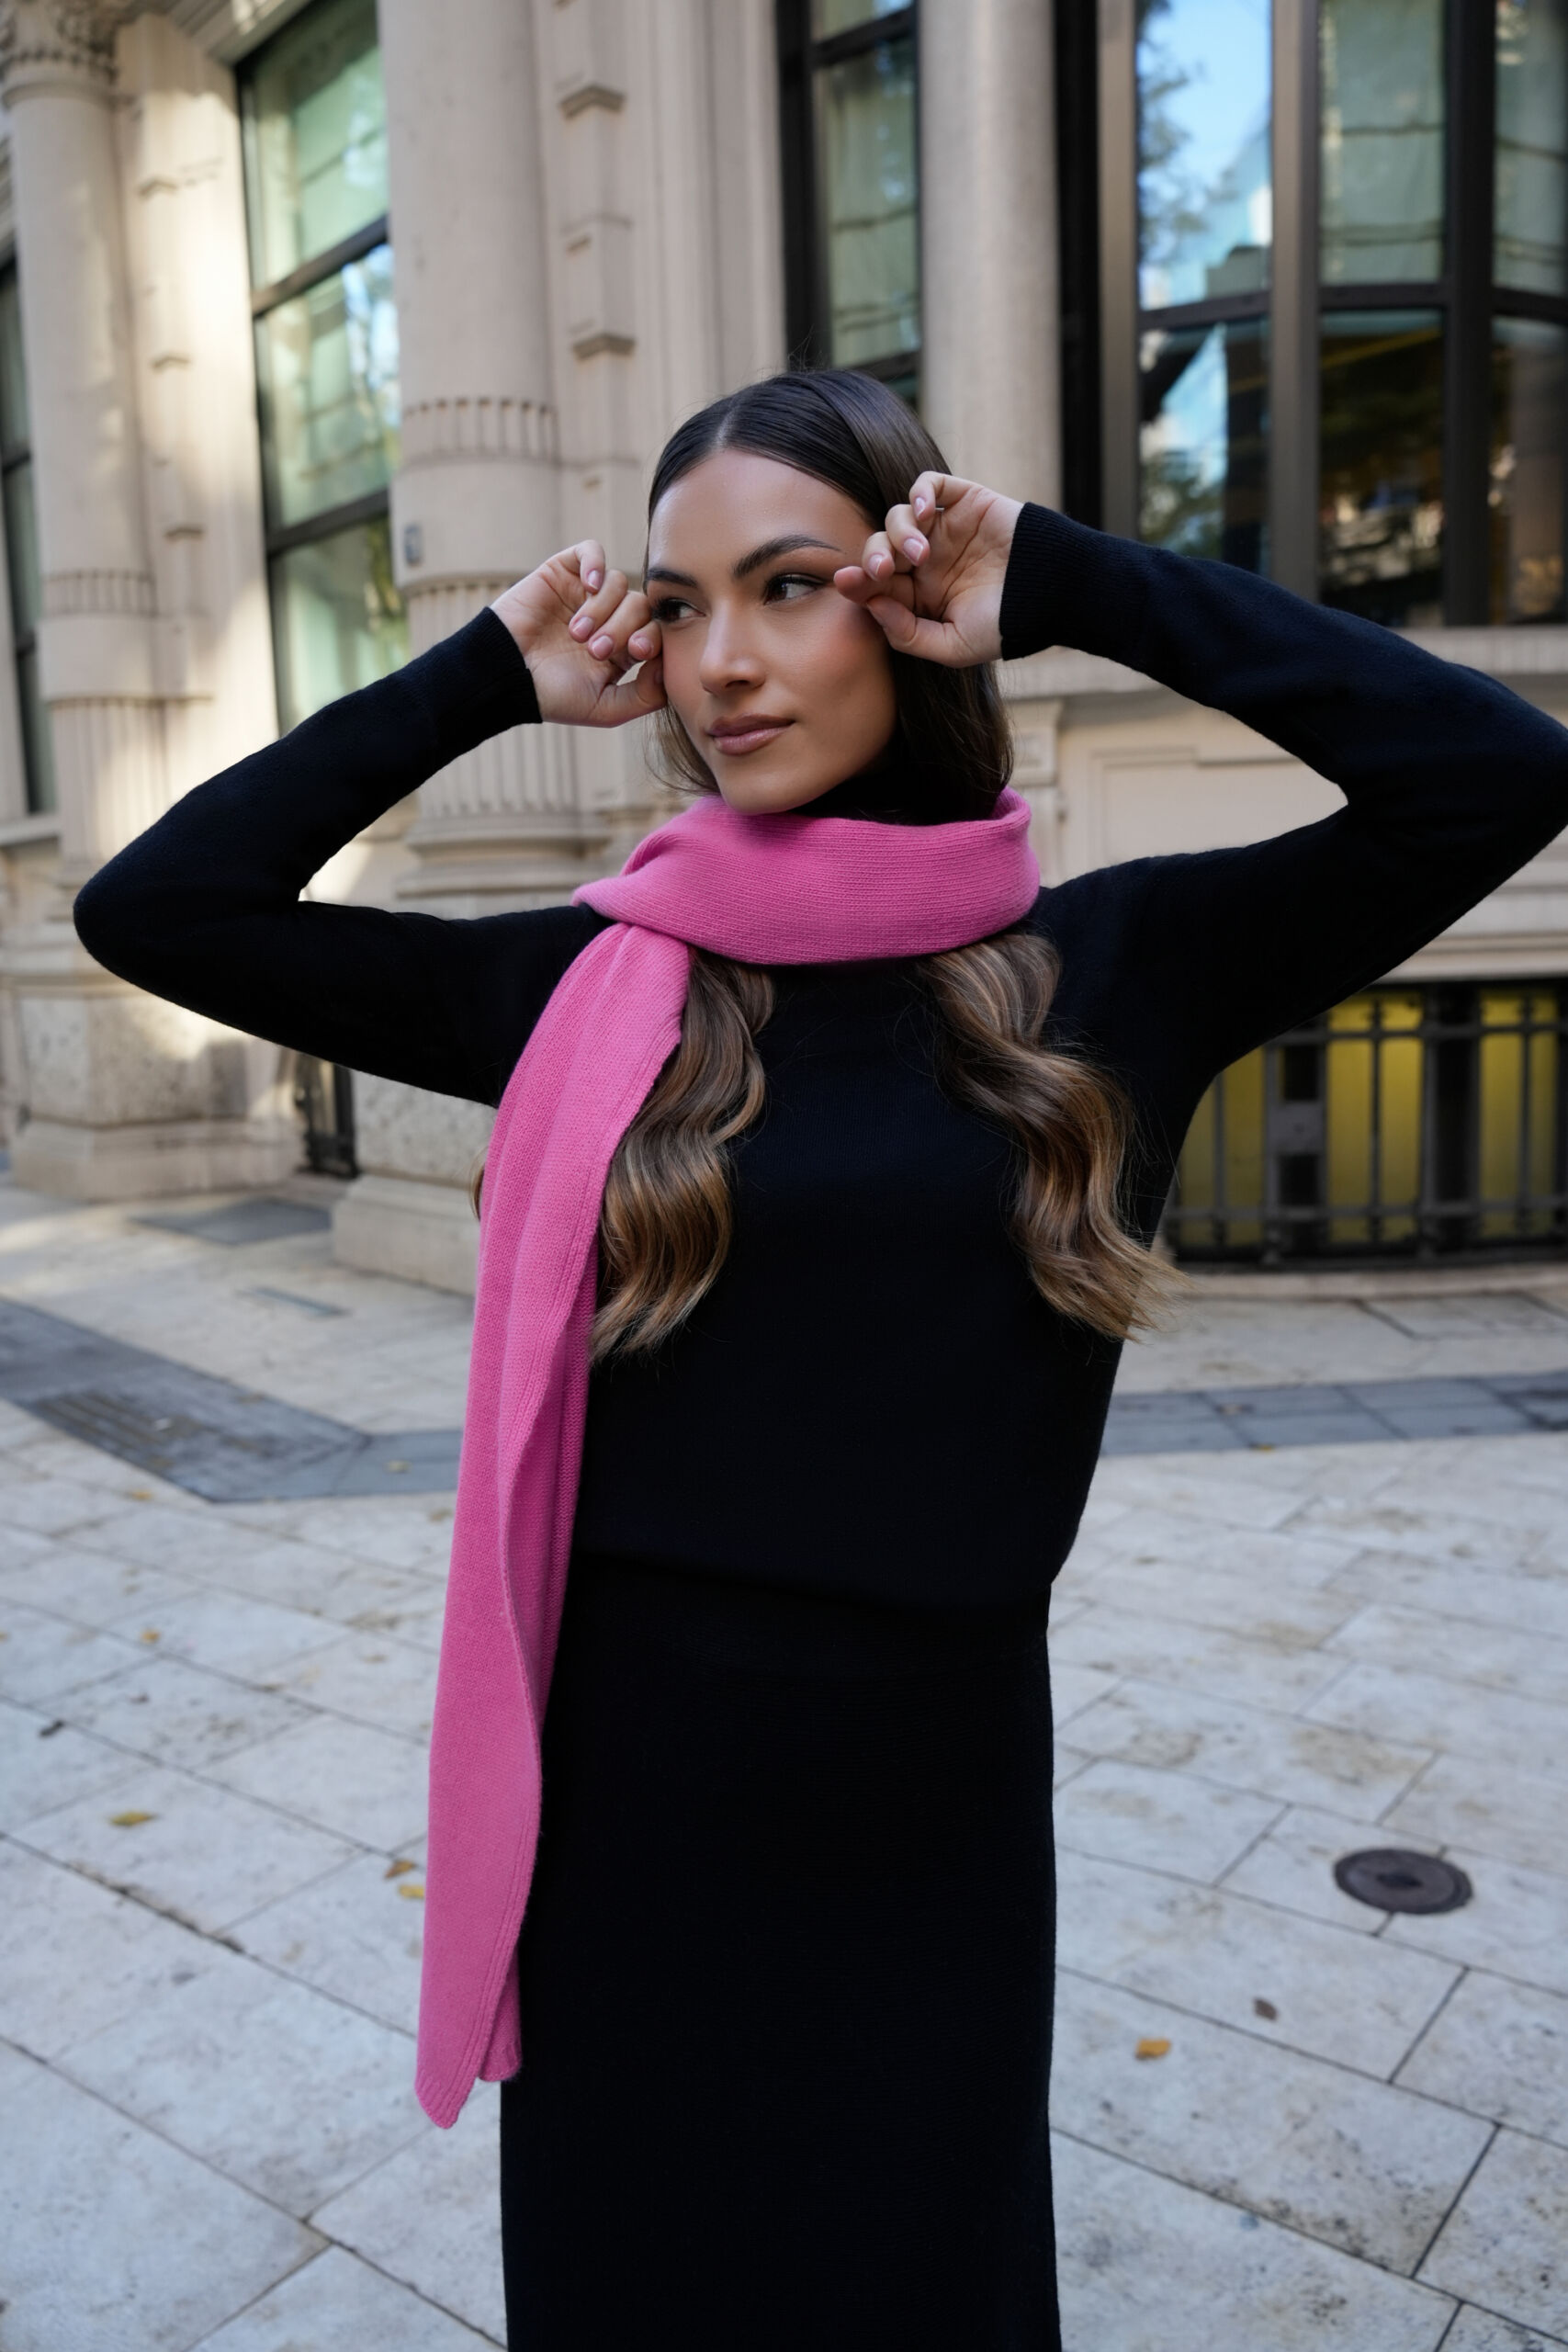 Trieste Fuxia 2 scaled 1stAmerican sciarpa da donna misto cashmere misura 45 x 215 - sciarpa invernale in misto cashmere 100% Made in Italy